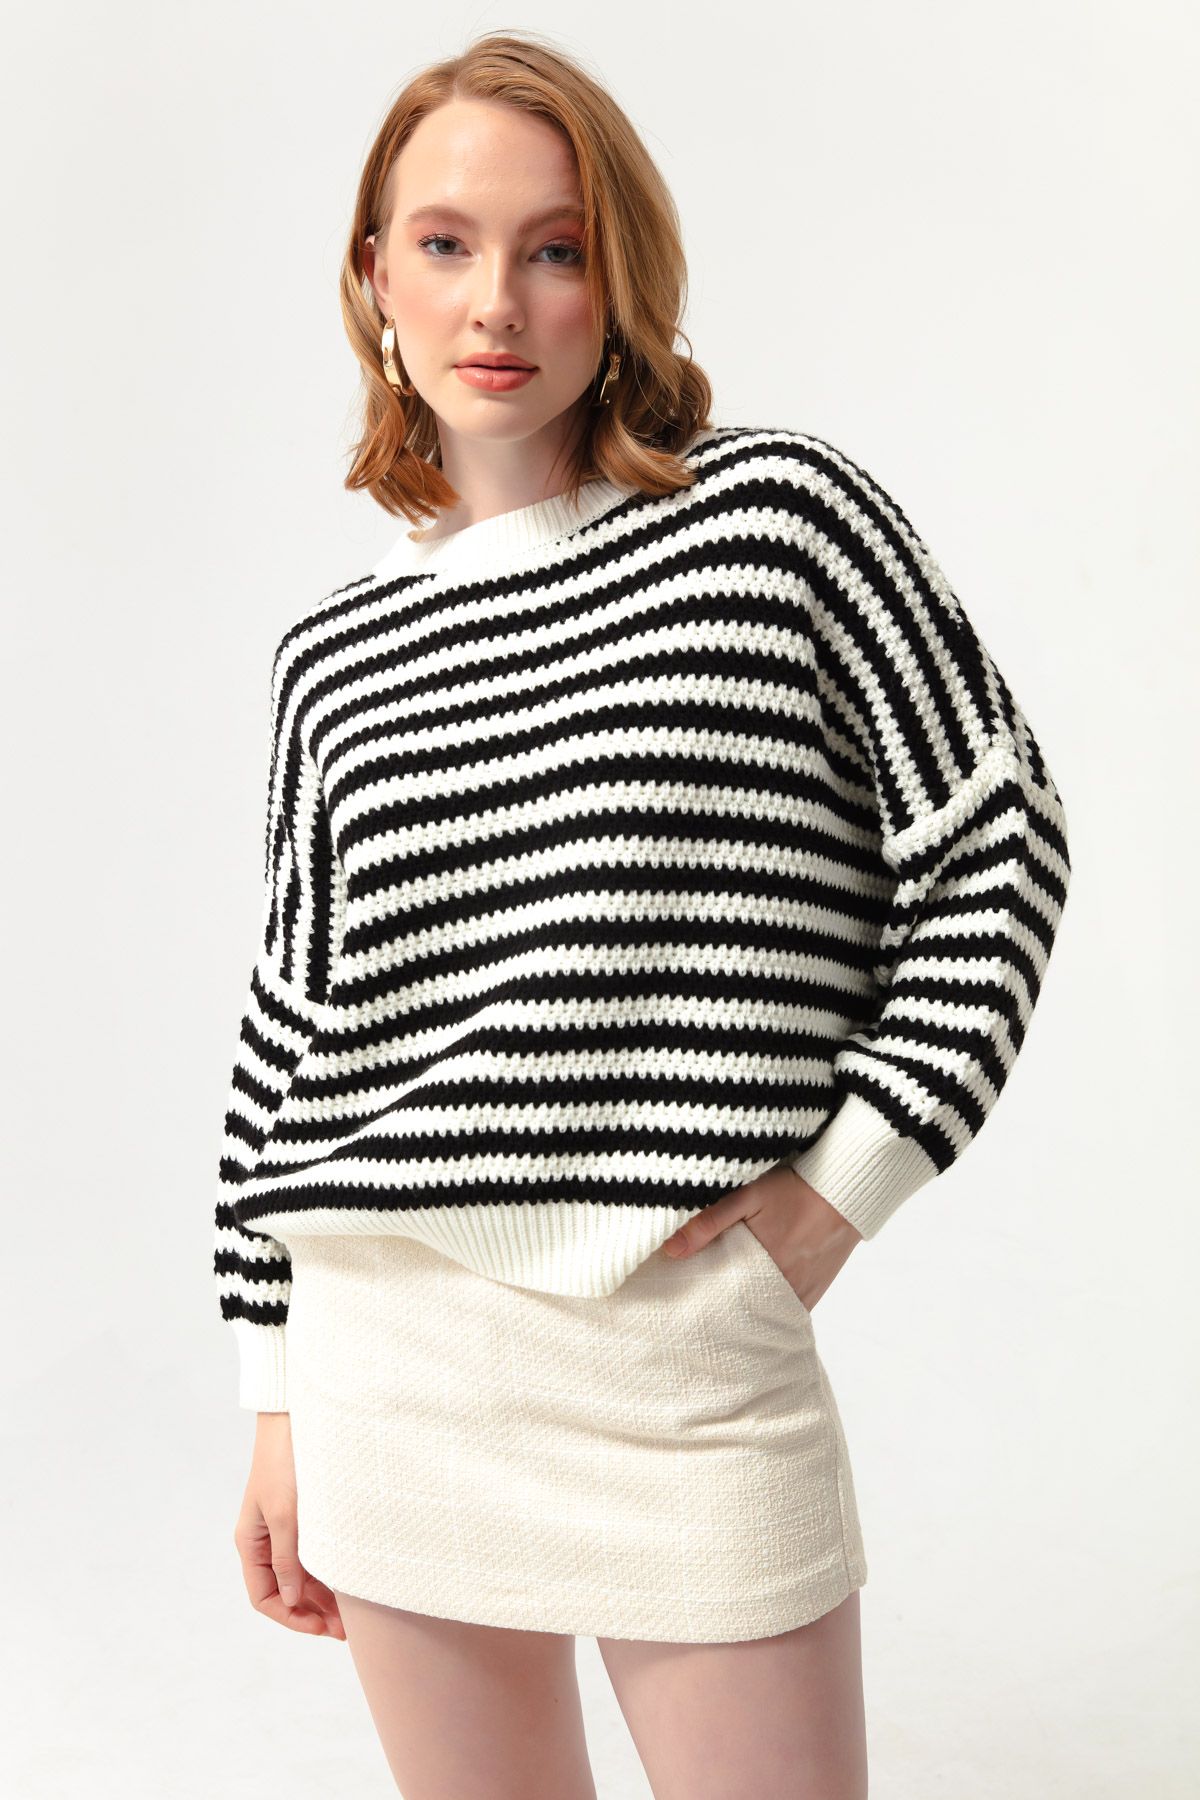 Women's Black-White Striped Knitwear Sweater